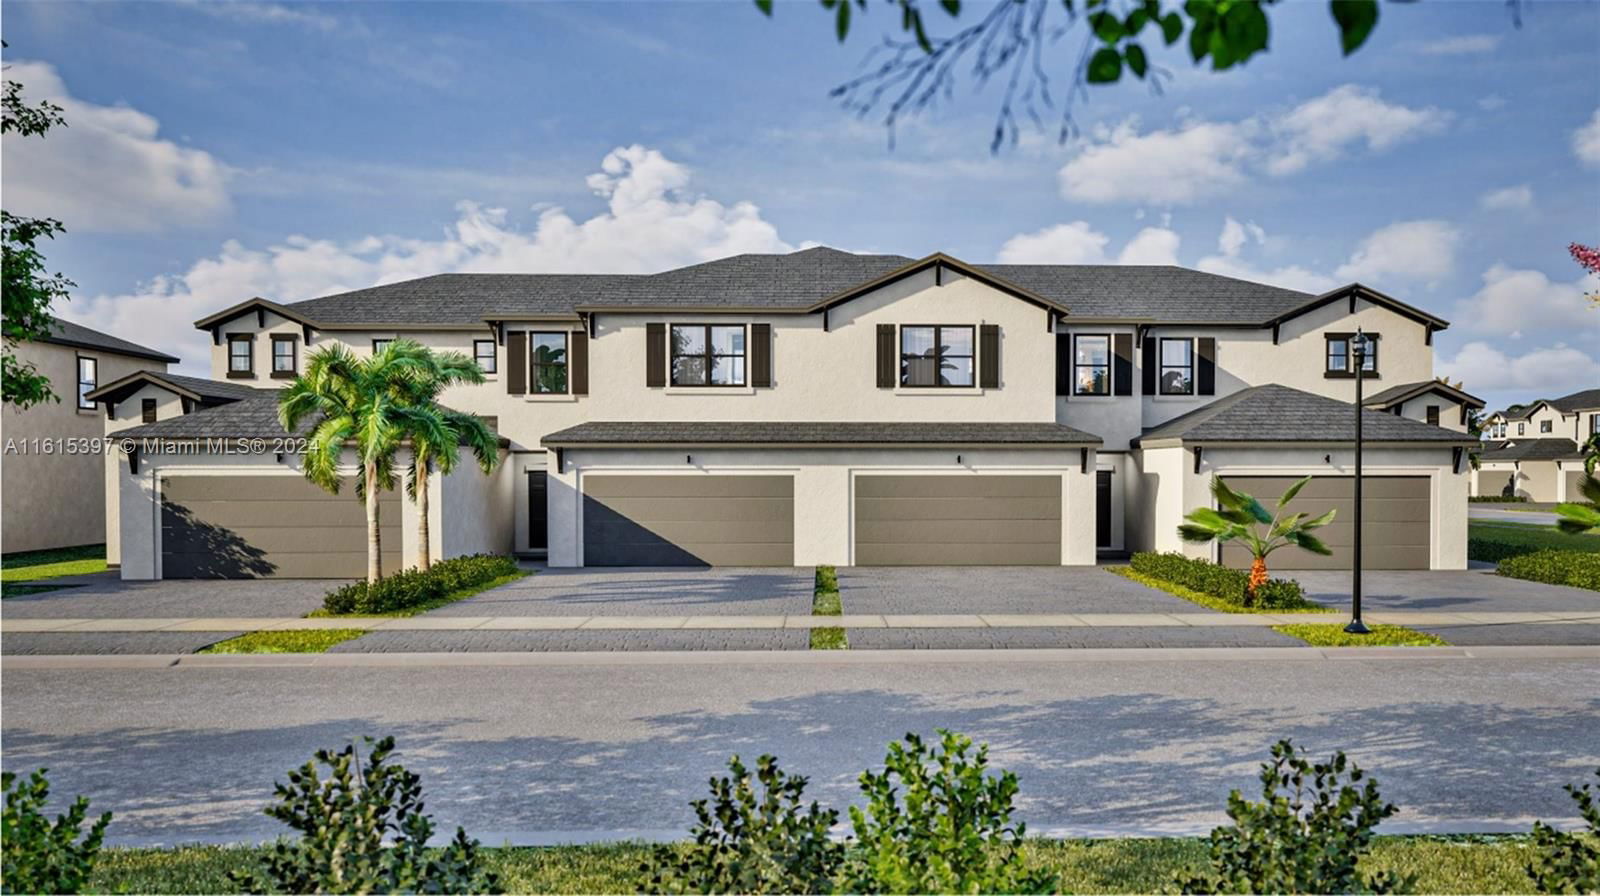 Real estate property located at 5001 Peacock Way, Broward County, Dania Preserve, Dania Beach, FL